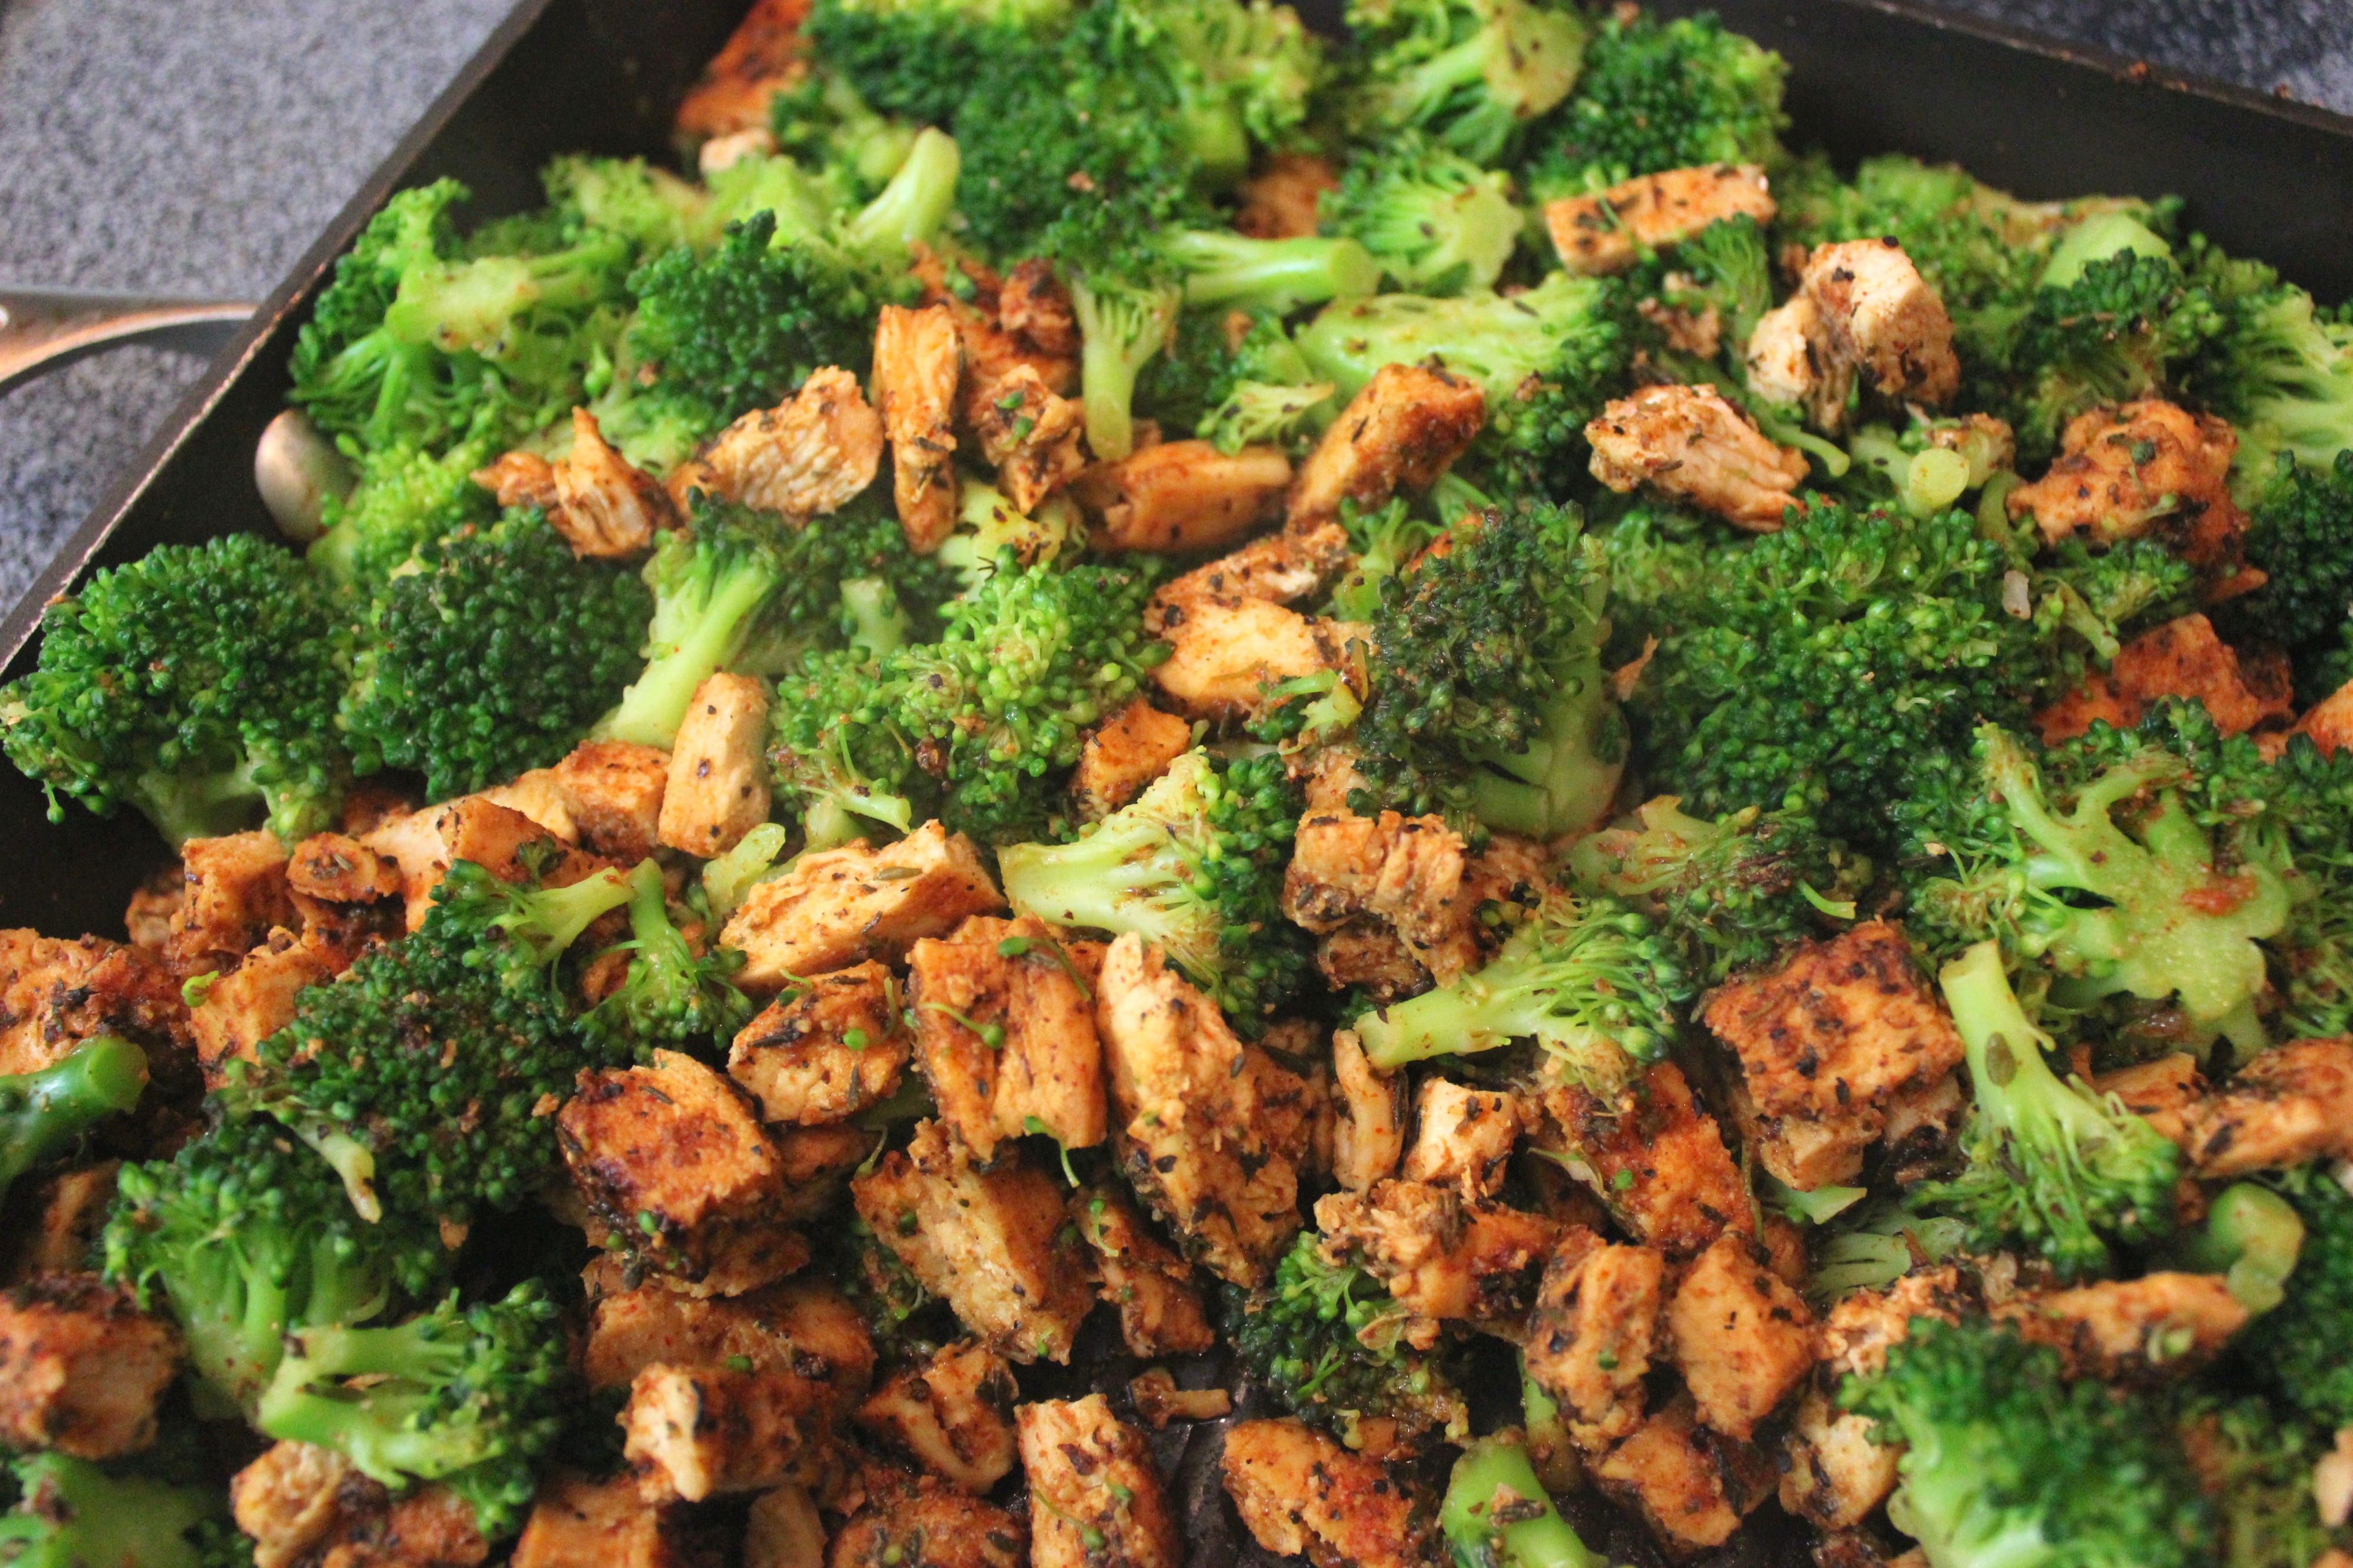 Southwestern Chicken and Broccoli Recipe